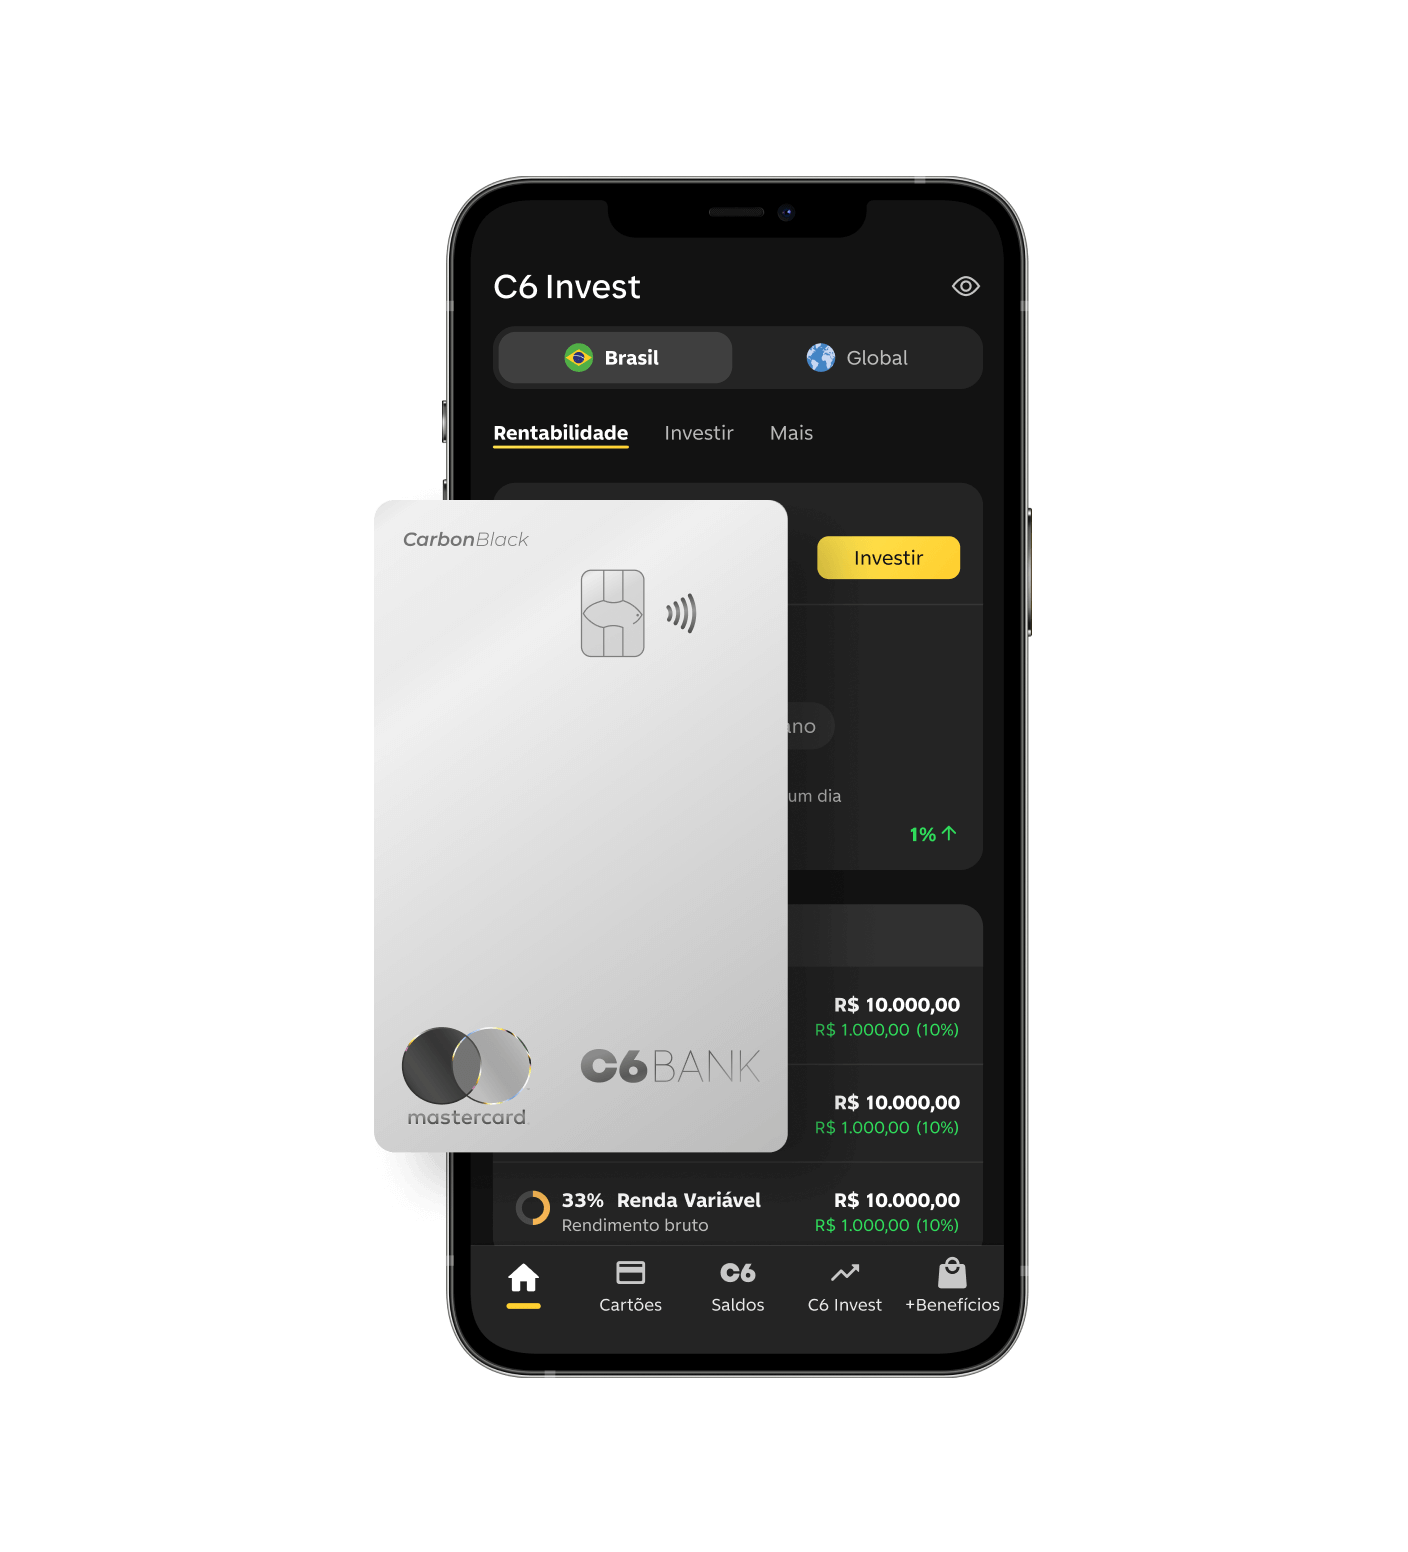 Celular com app do C6 Bank aberto na tela de C6 Invest com cartão C6 Carbon Silver ao lado